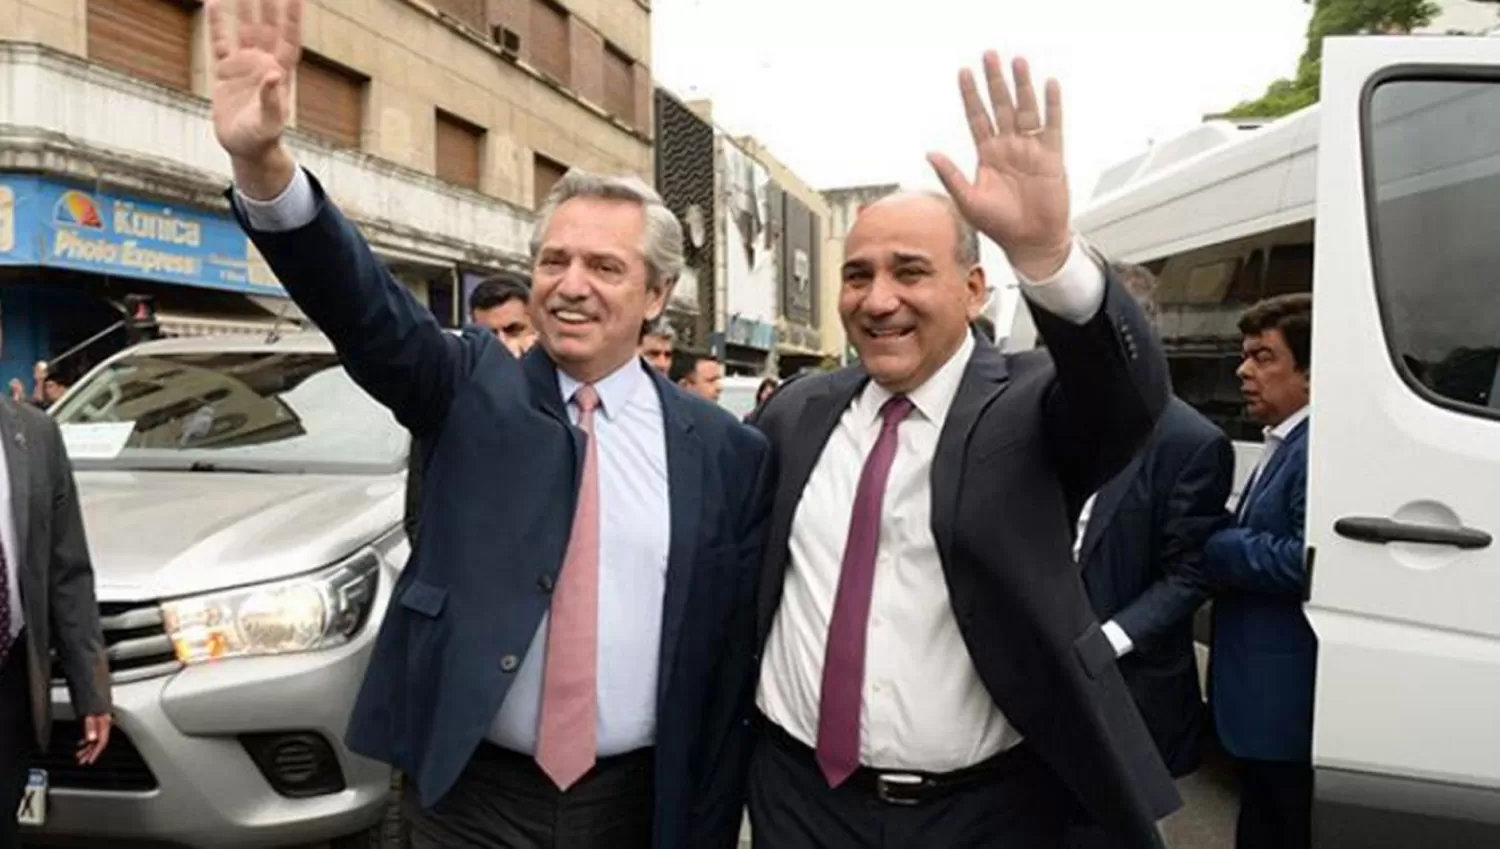 A LA NACIÓN. El gobernador, Juan Manzur, será el jefe del nuevo gabinete de Alberto Fernández.